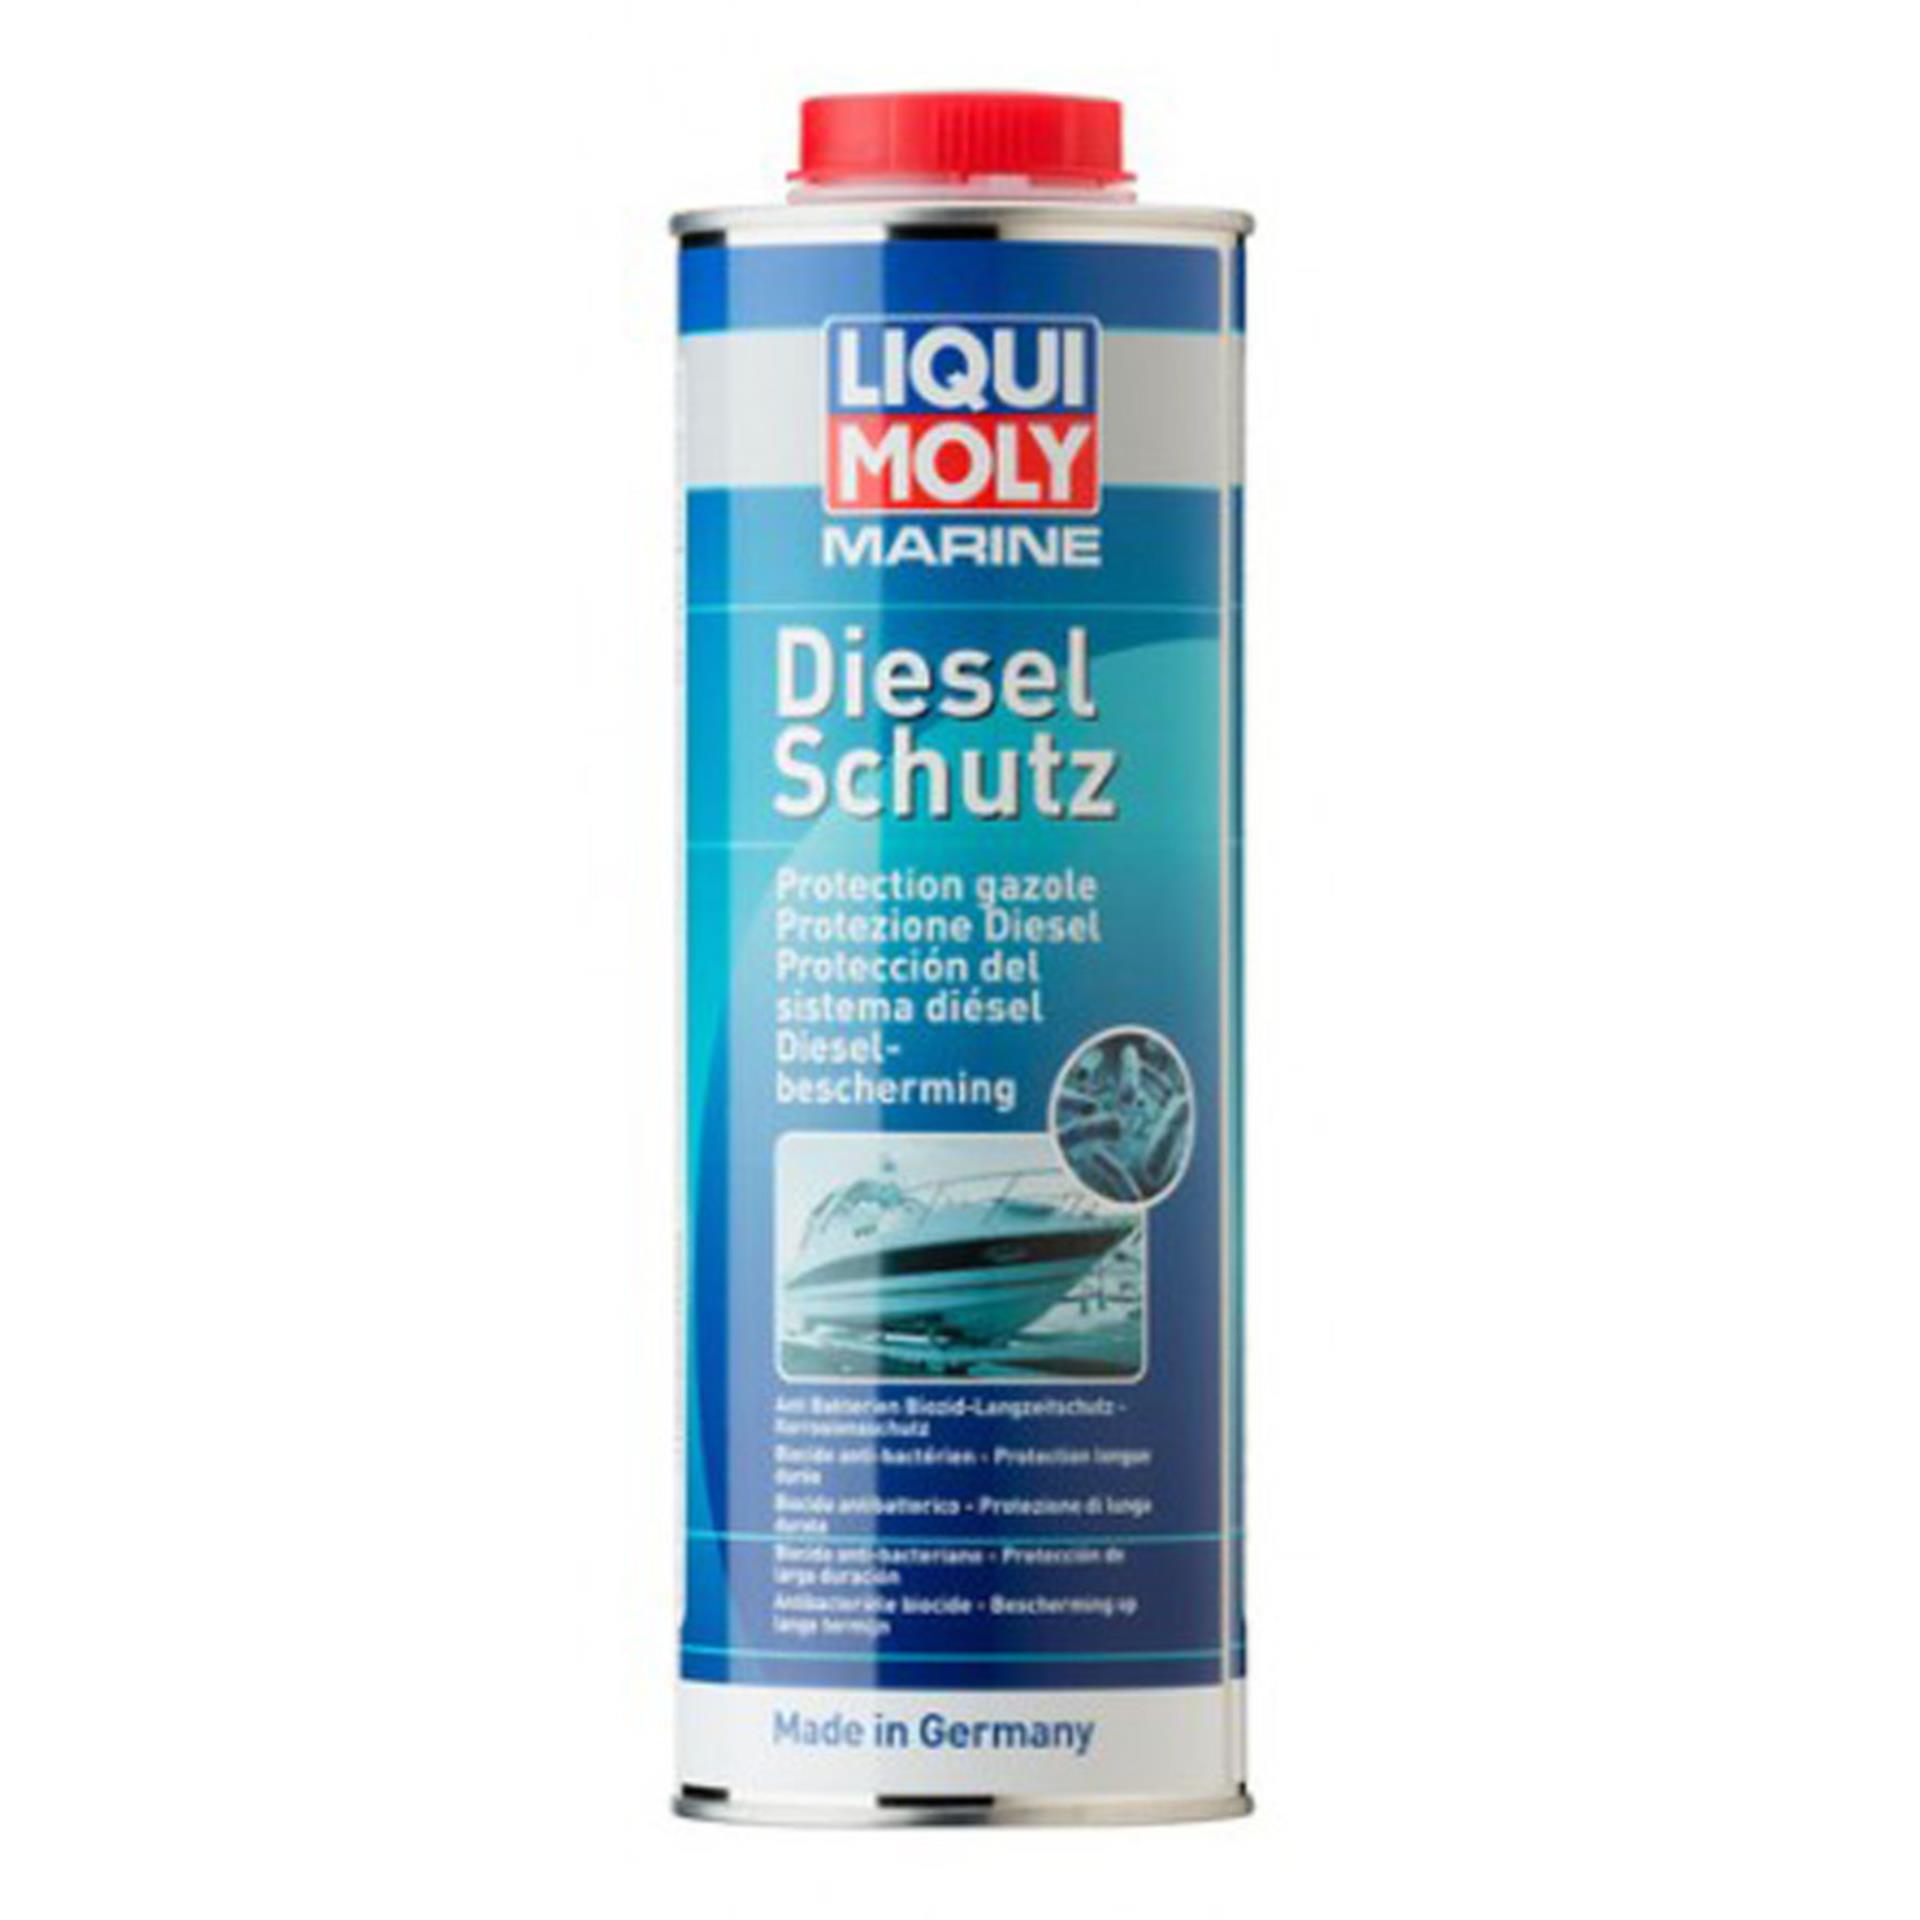 Liqui Moly Diesel Schutz, 1 Liter